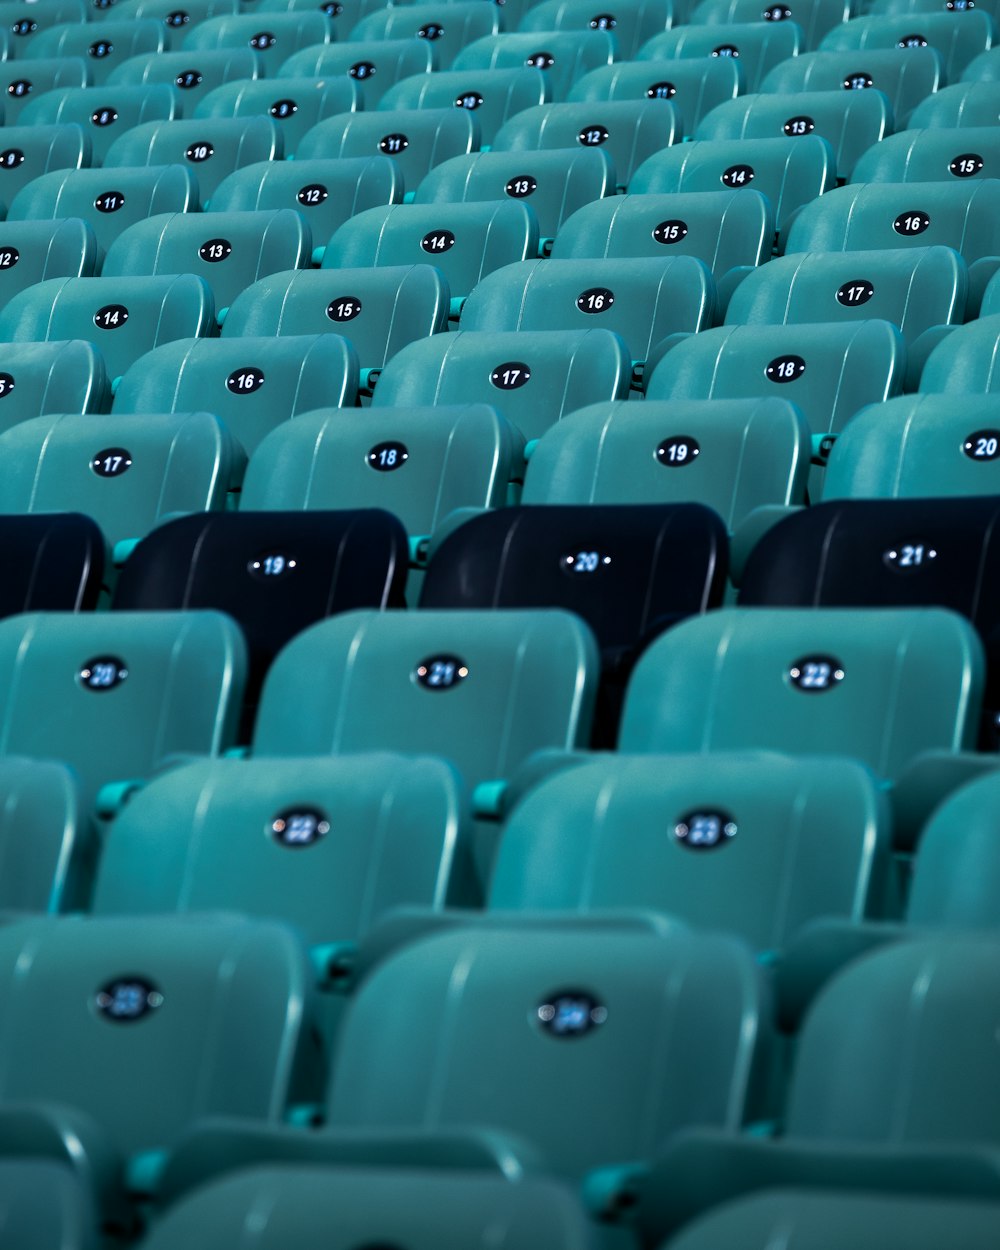 blue plastic chairs in stadium